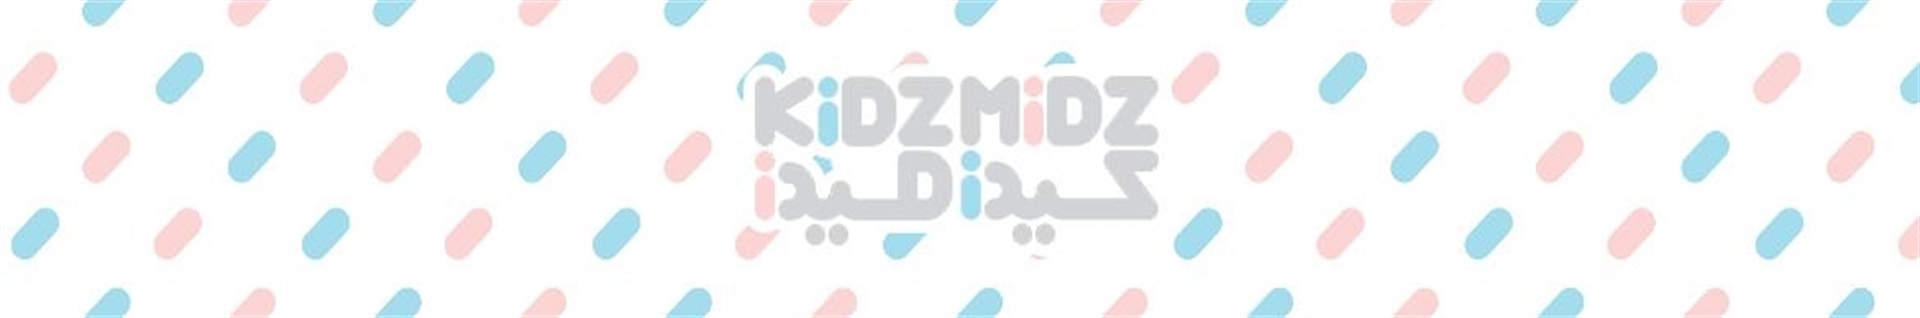 فروشگاه اینترتنی کیدزمیدز |  KidzMidz